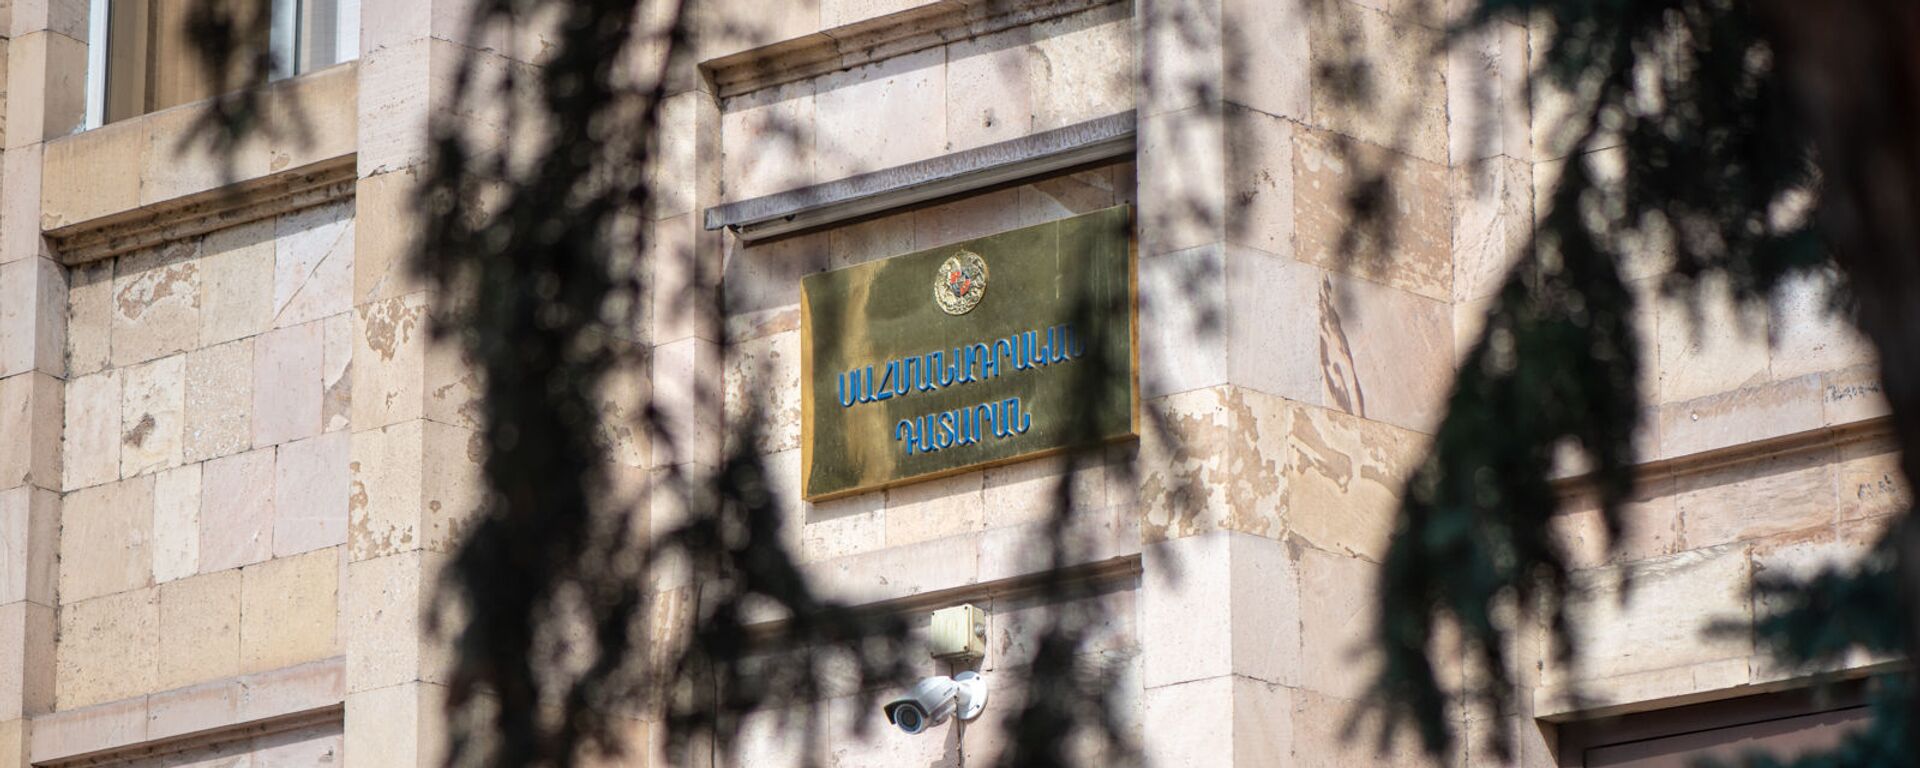 Вывеска над входом в здание Конституционного суда Армении - Sputnik Армения, 1920, 11.05.2021